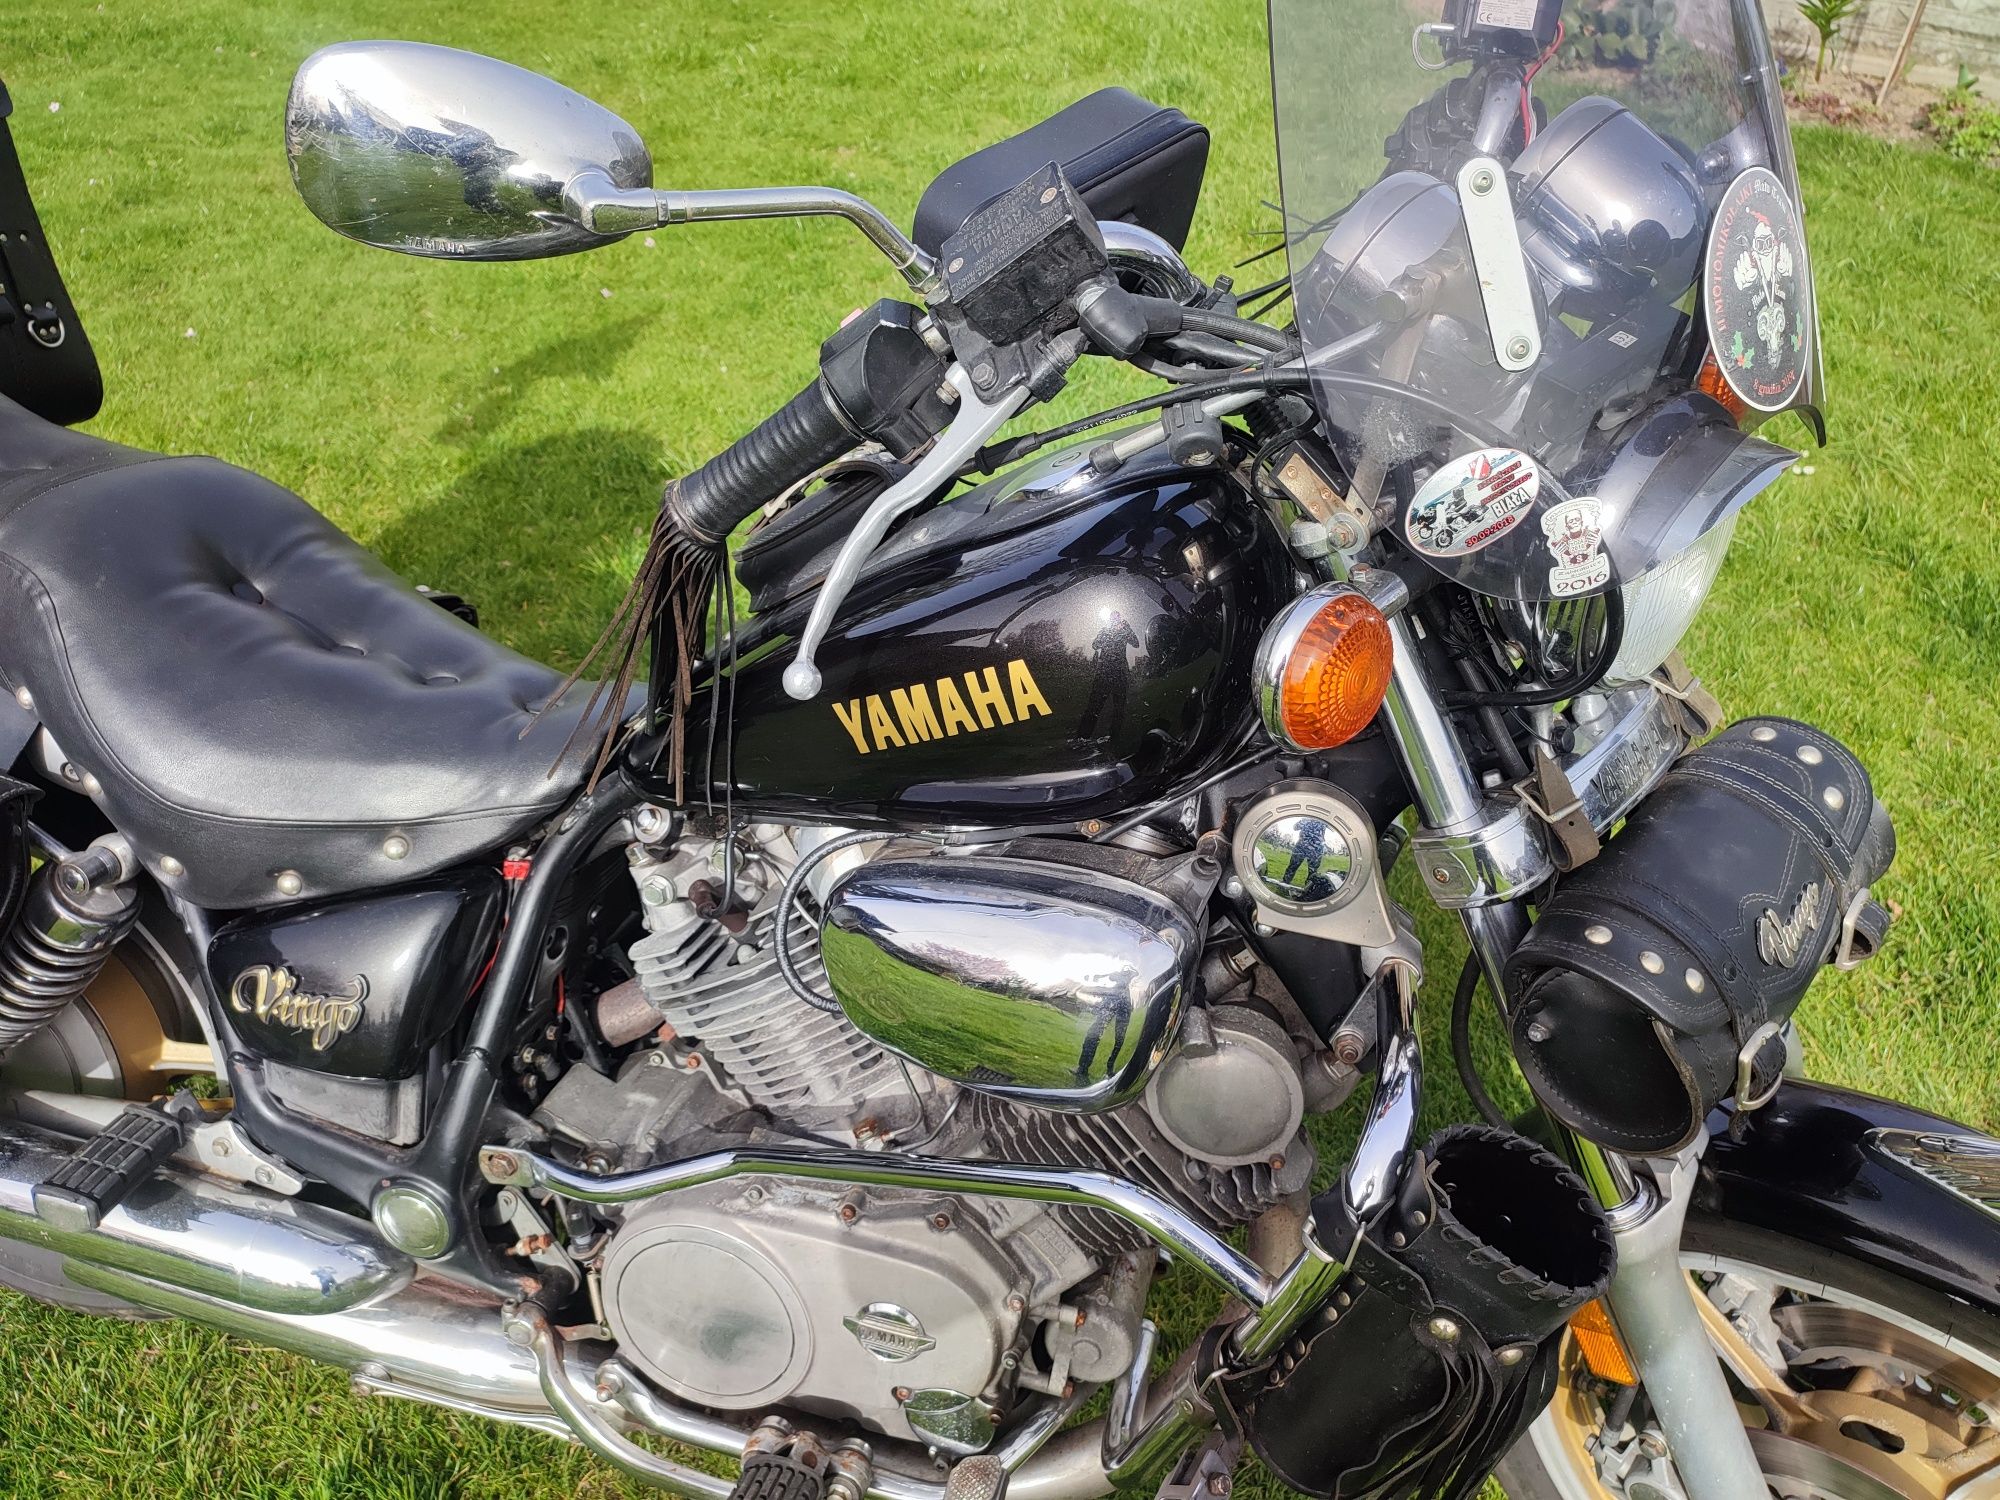 Yamaha Virago 700